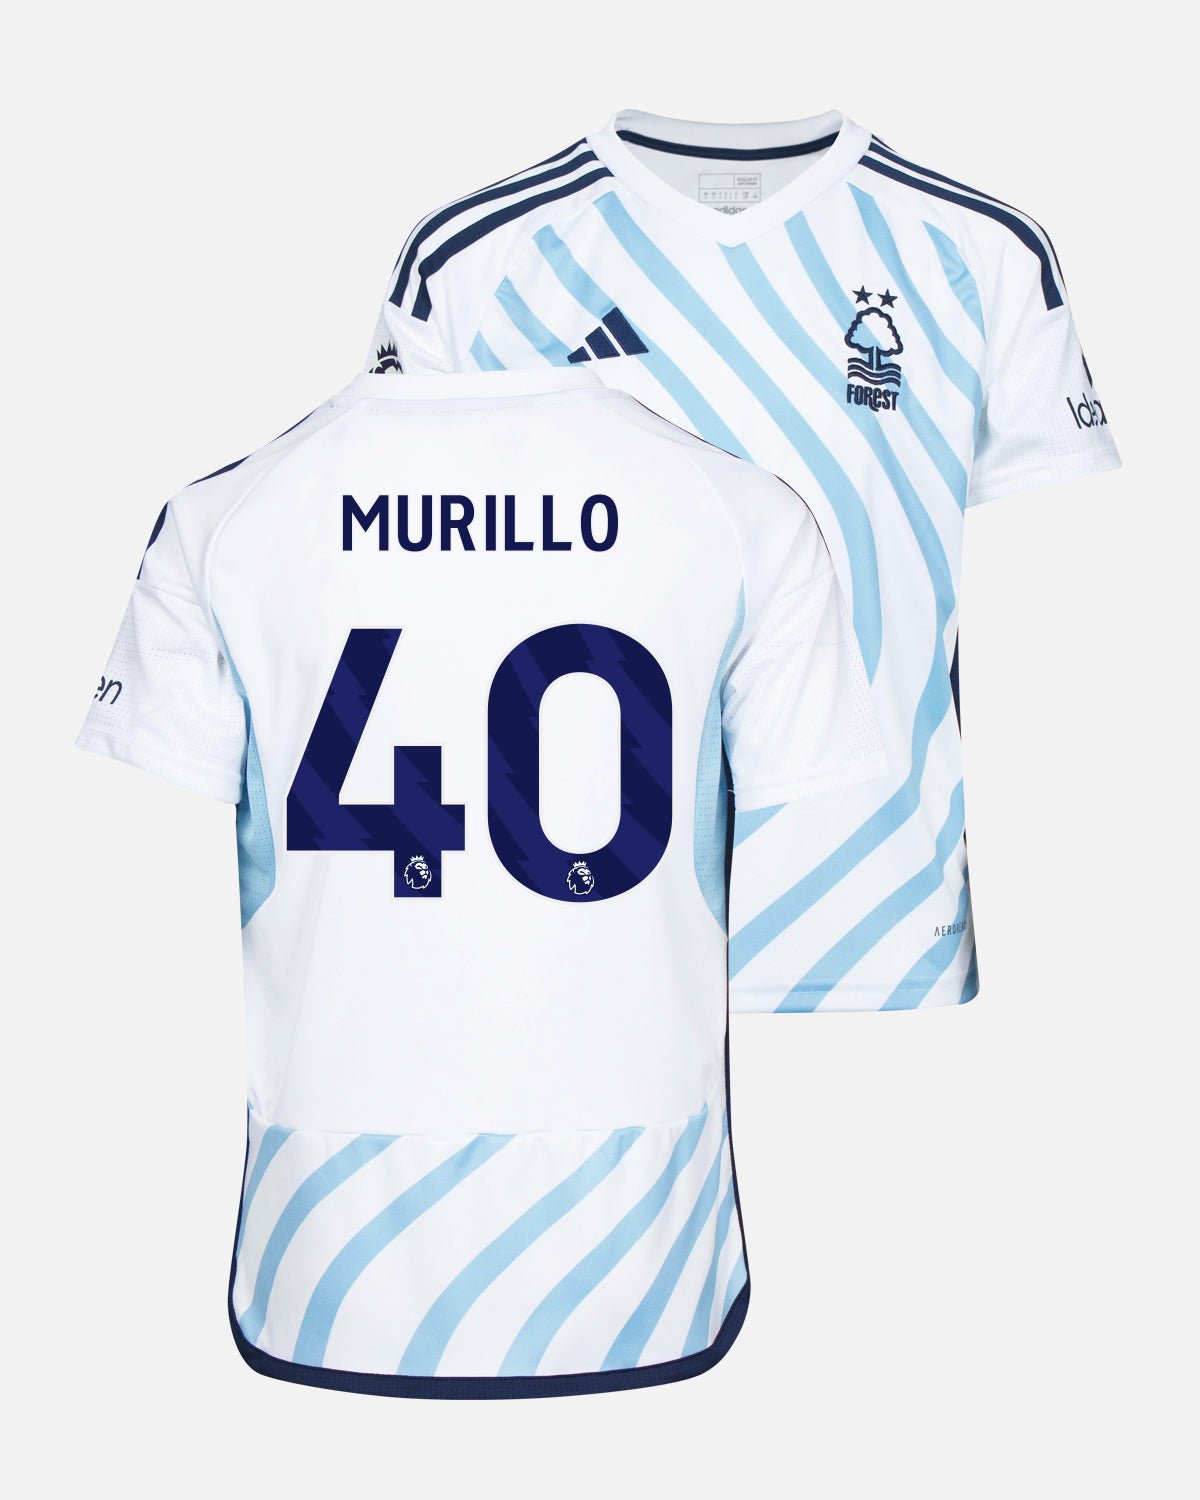 NFFC Junior Away Shirt 23-24 - Murillo 40 - Nottingham Forest FC